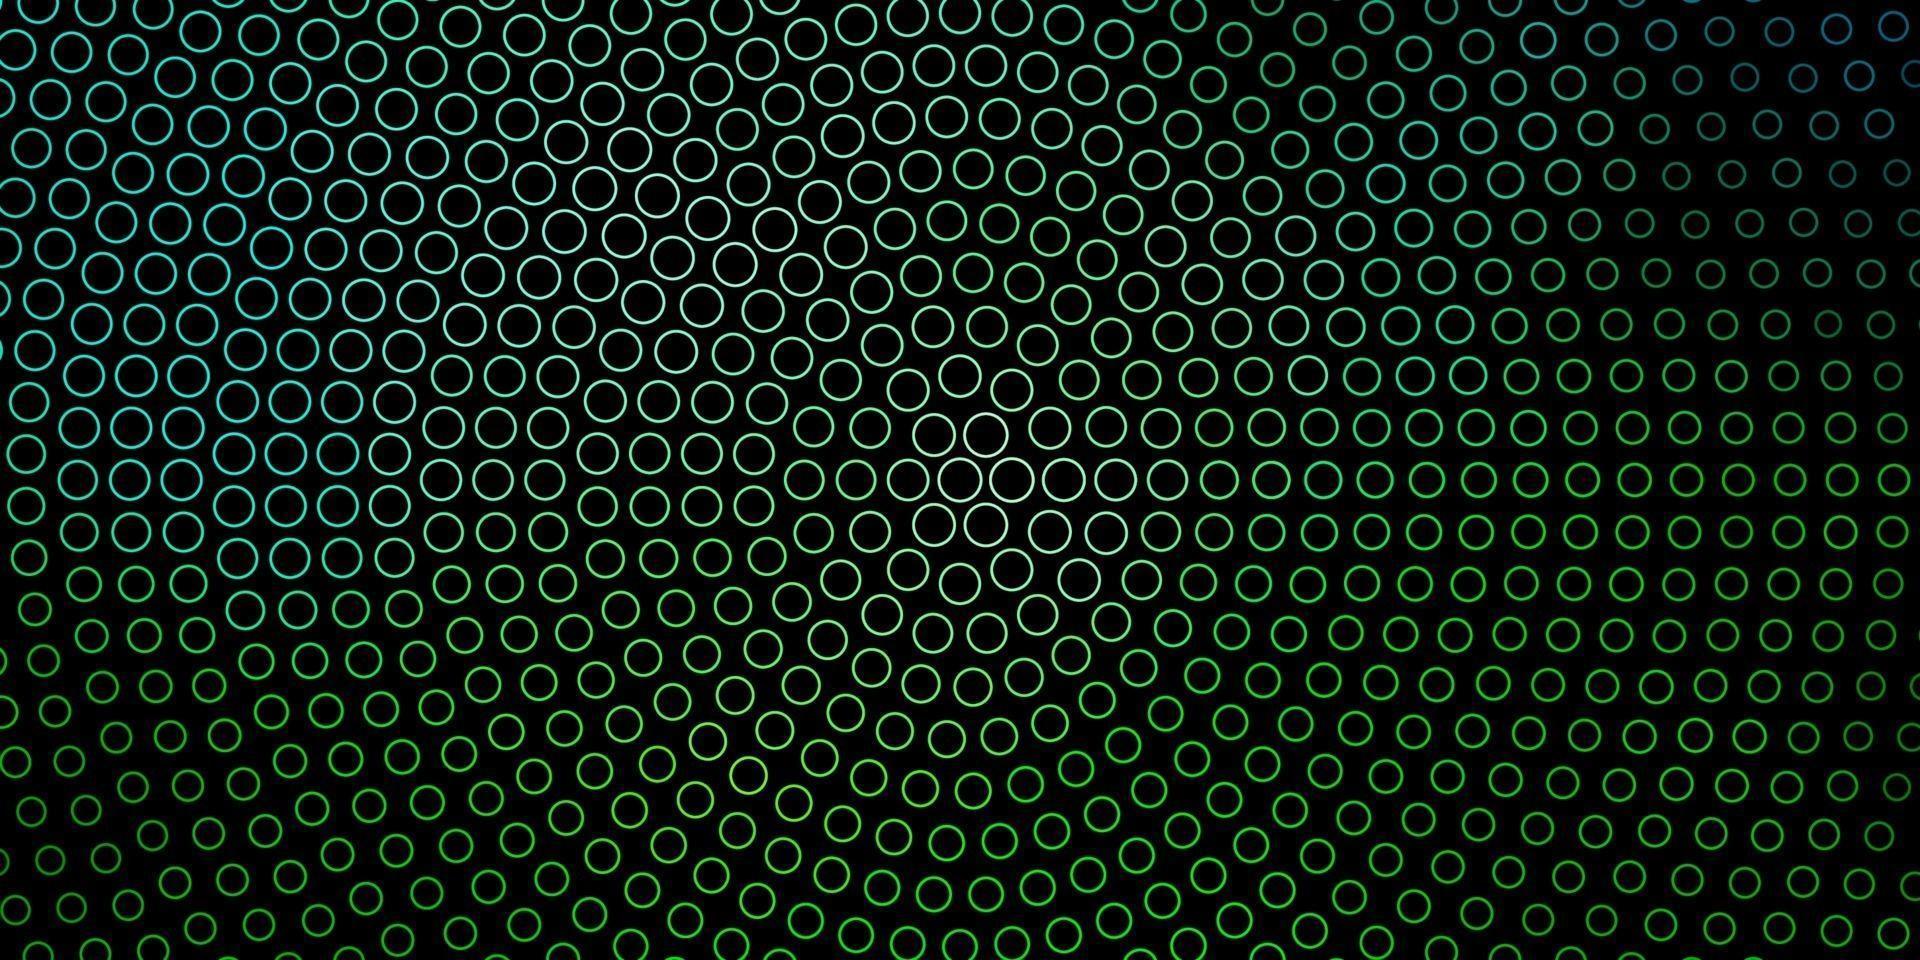 sfondo vettoriale verde scuro con cerchi.